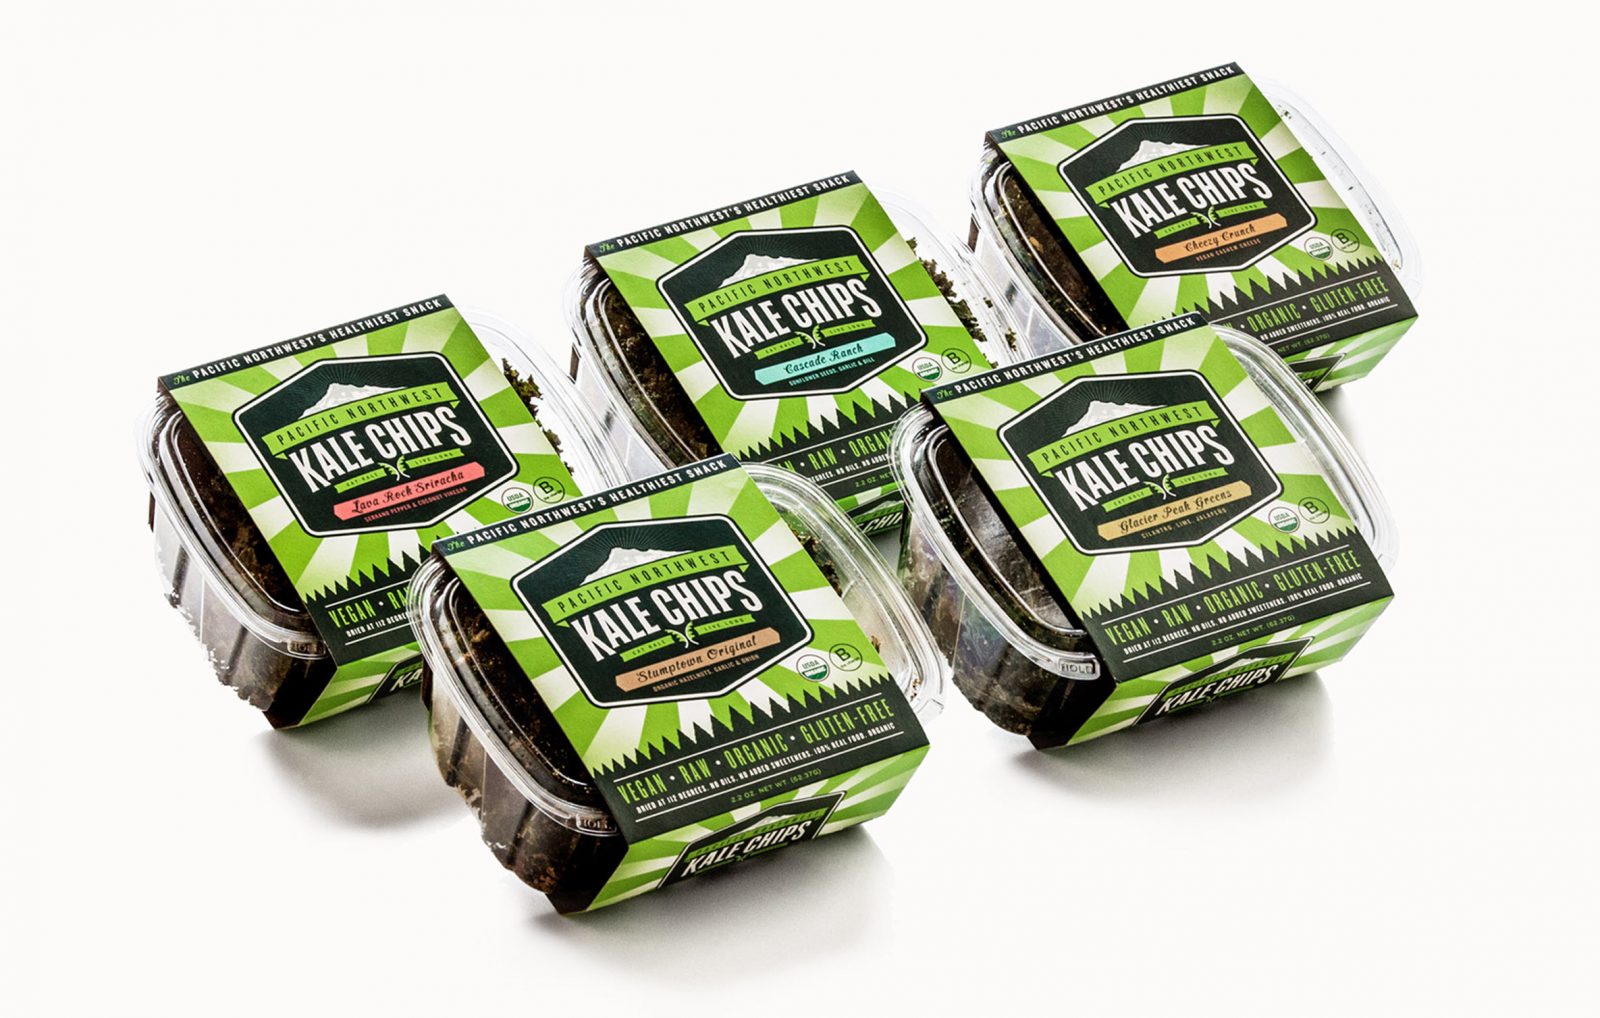 Kale Chips packaging design